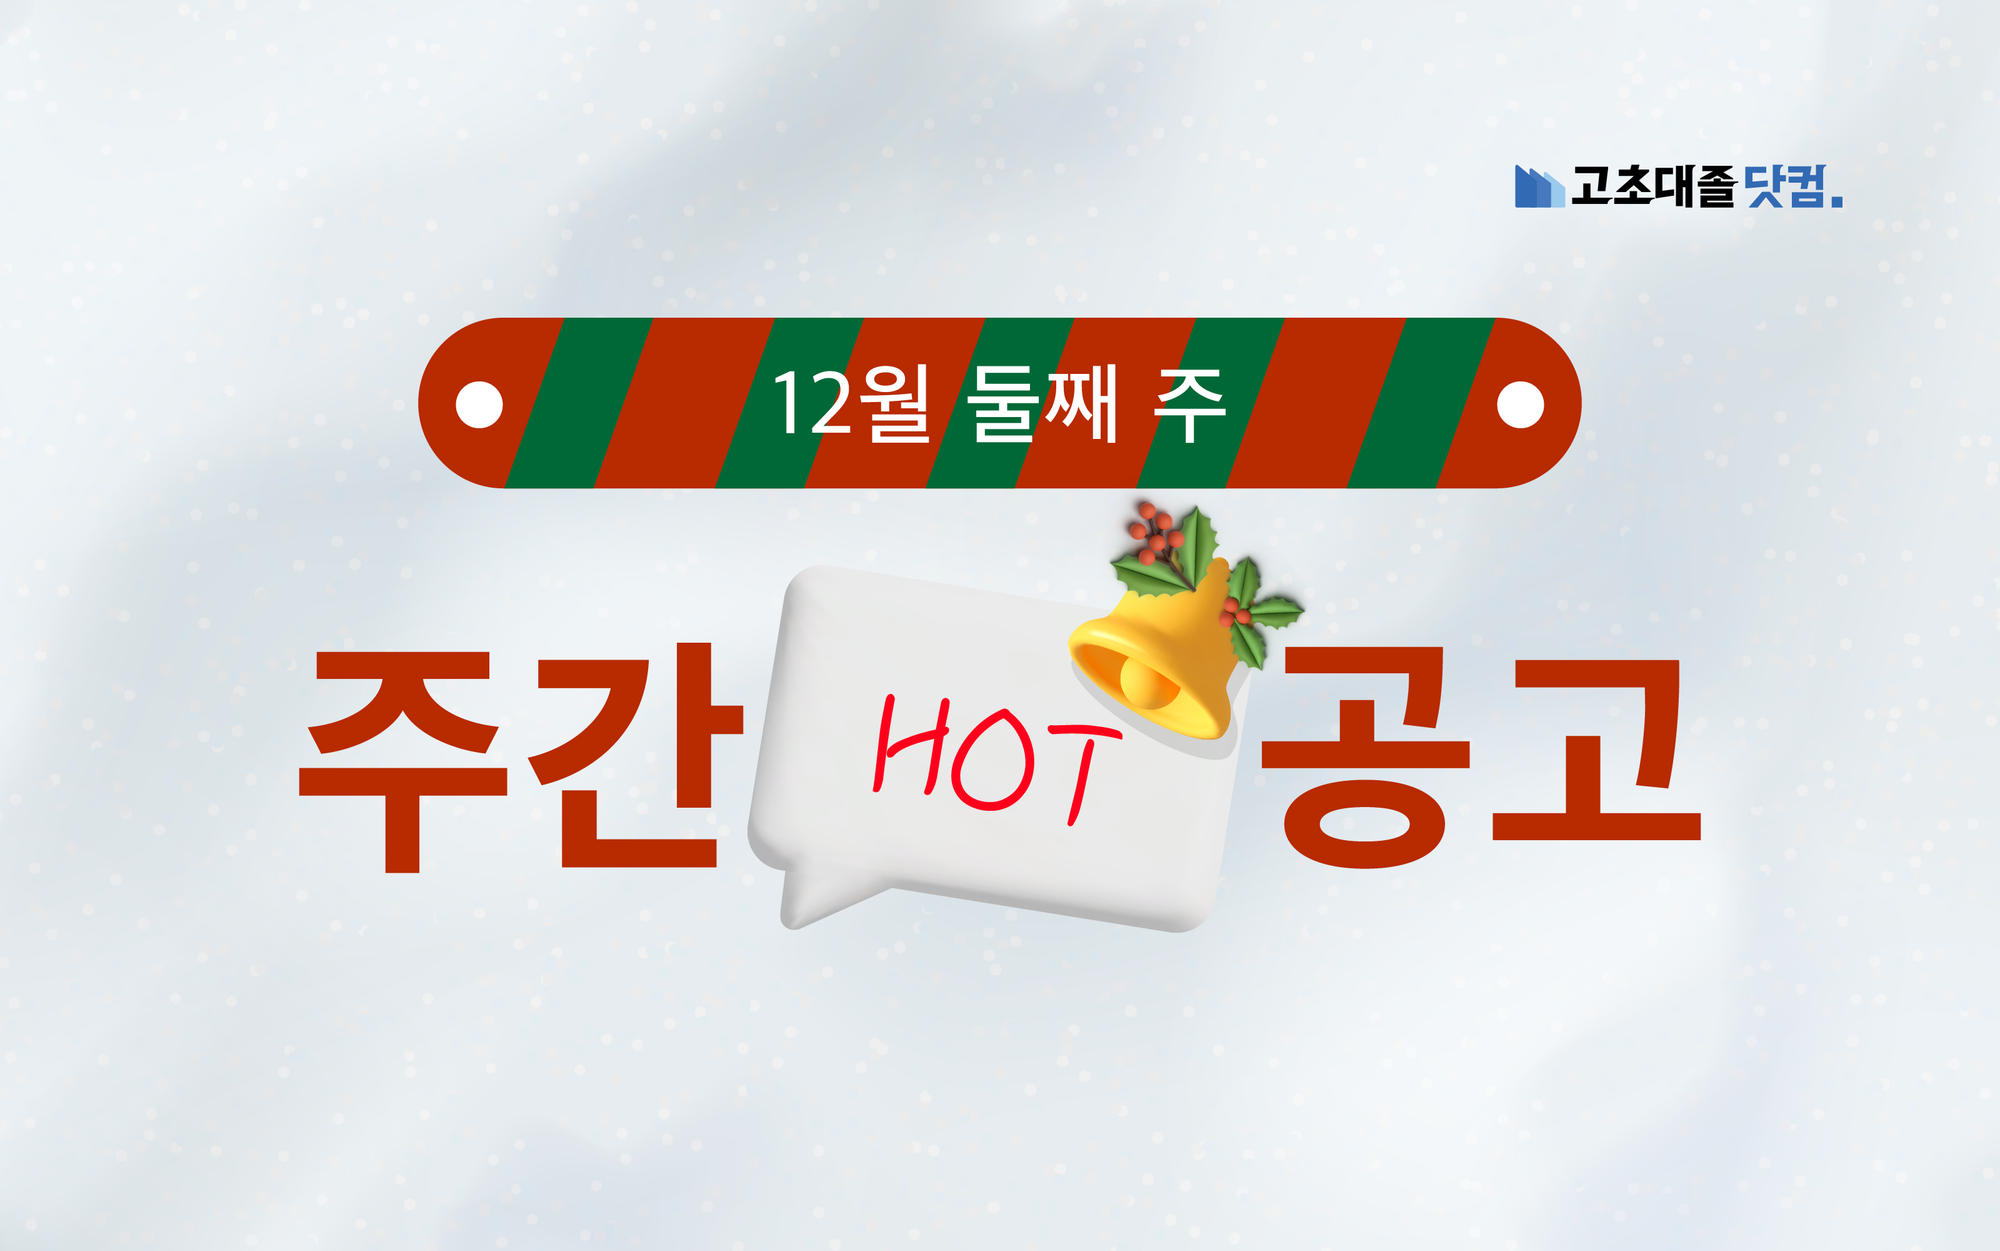 12월 둘째 주 핫 공고 - HK이노엔, 아모레퍼시픽, HD현대사이트솔루션